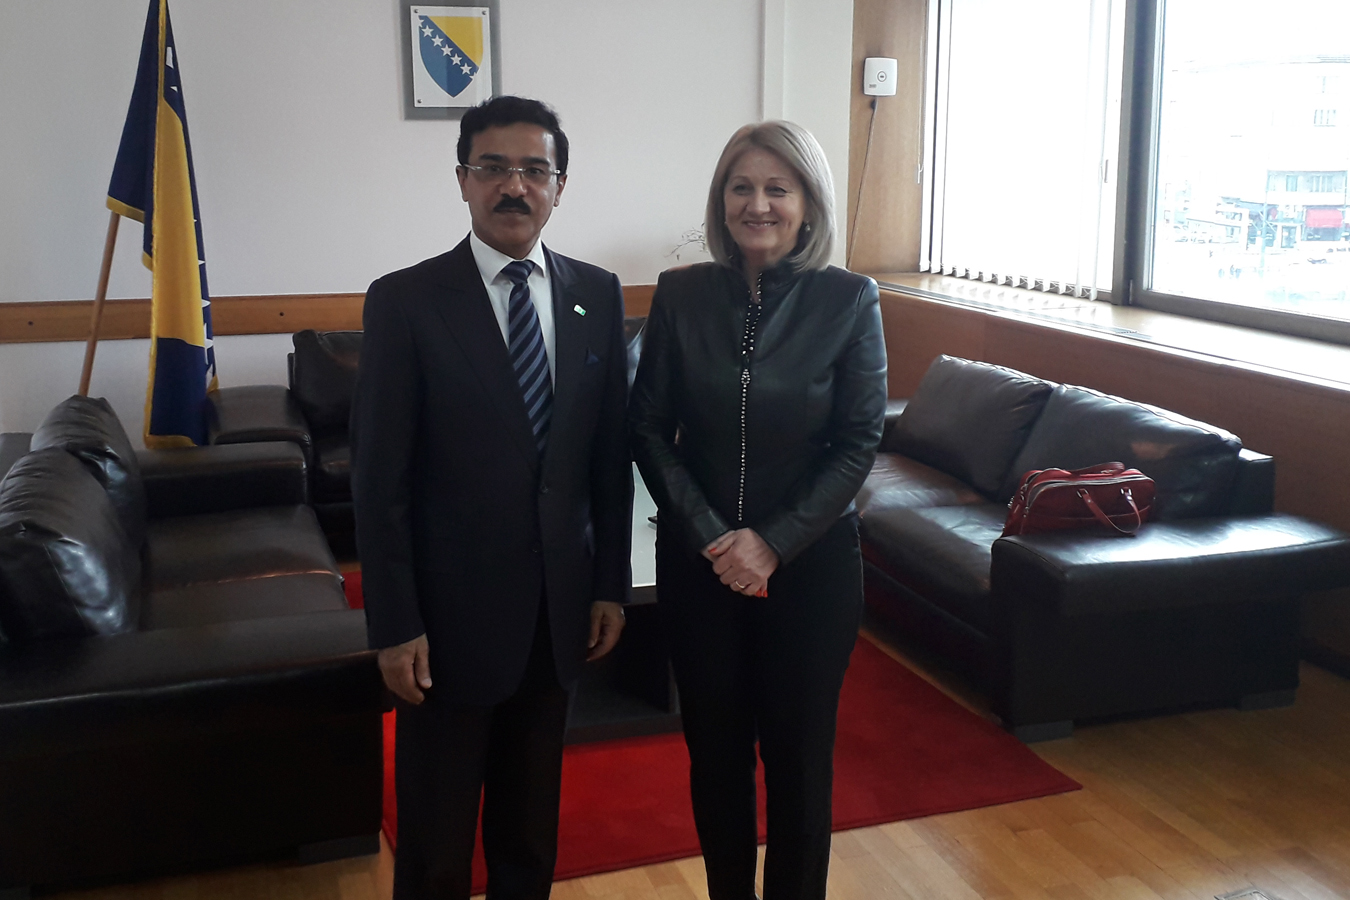 Predsjedateljica Zastupničkog doma Borjana Krišto sastala se sa veleposlanikom Kraljevine Saudijske Arabije u BiH